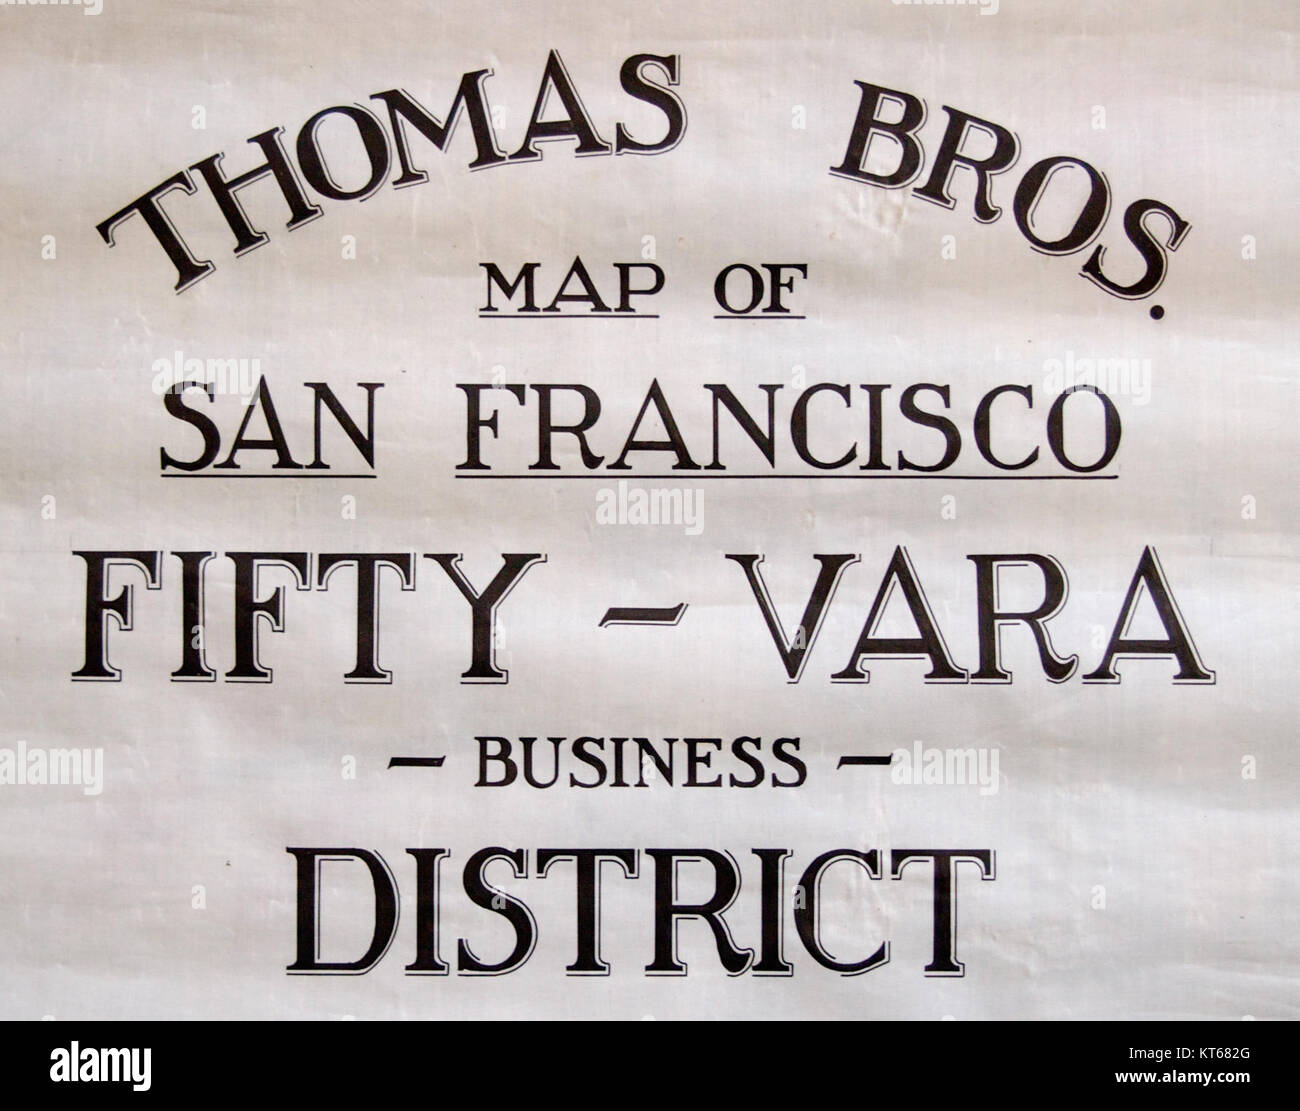 Thomas Bros. logo on San Francisco map Stock Photo